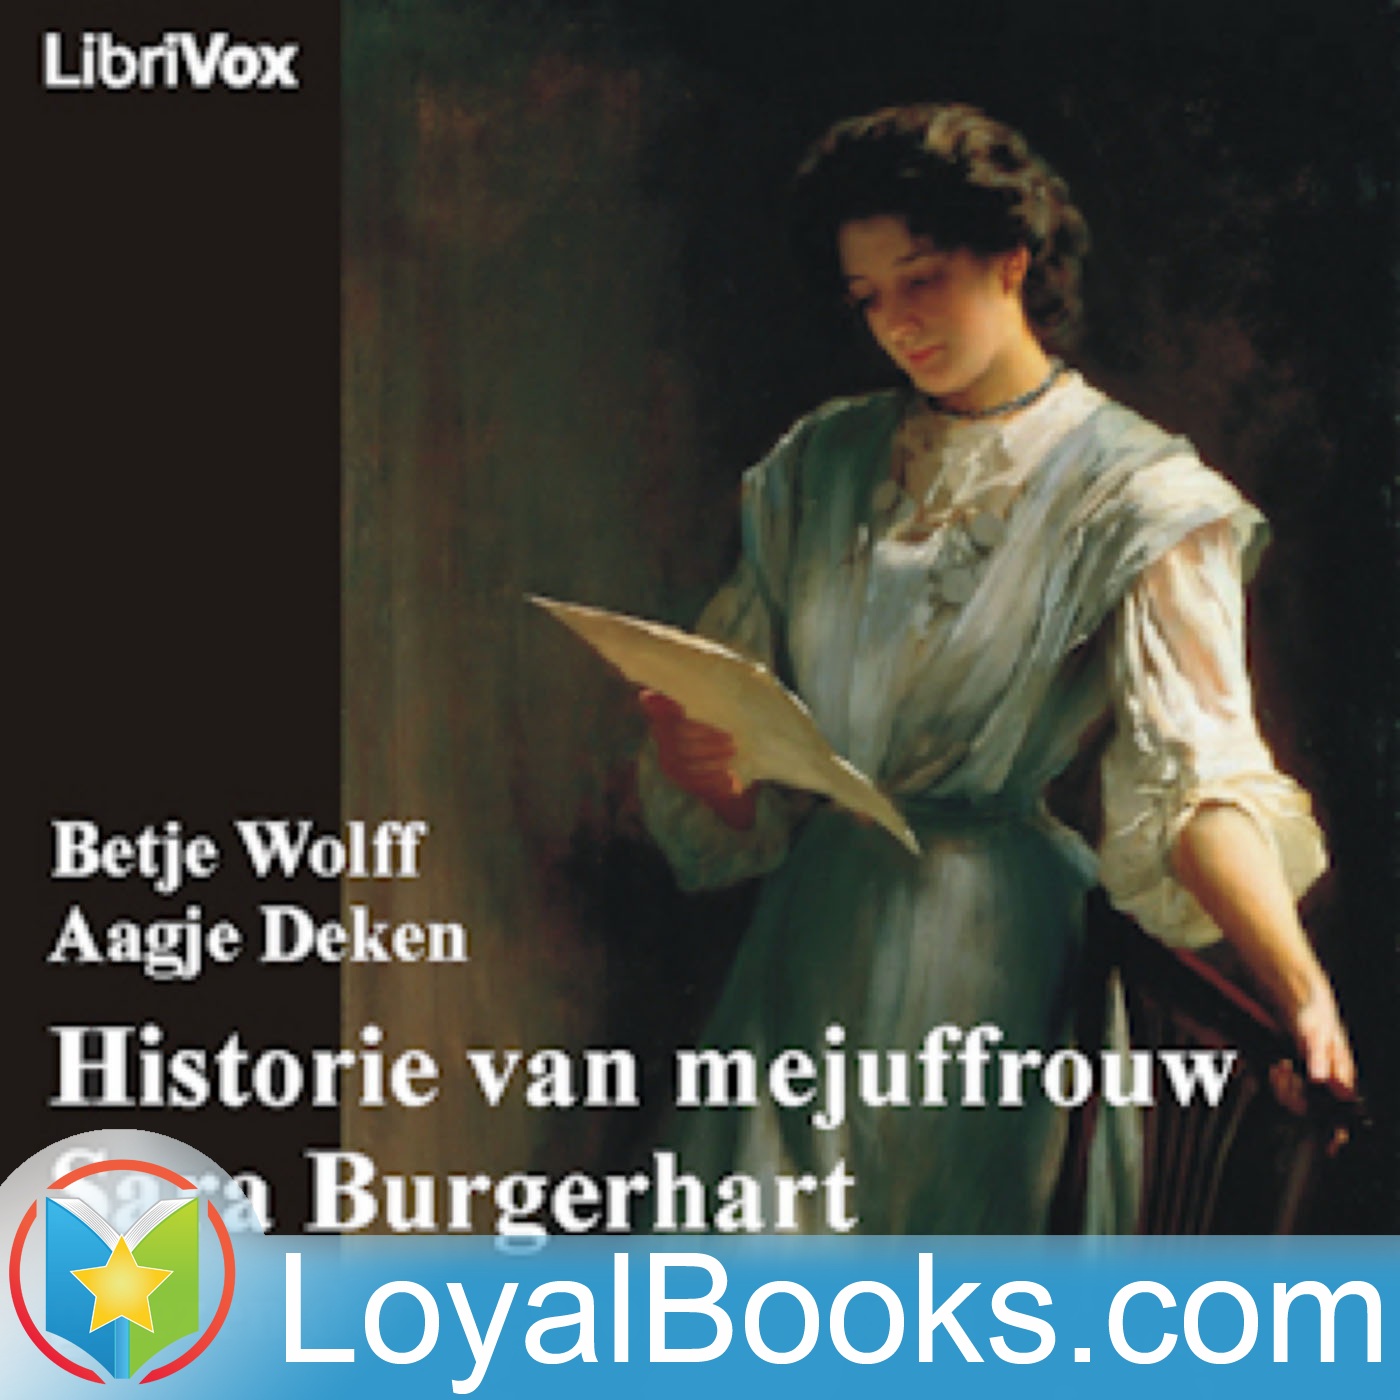 Historie van mejuffrouw Sara Burgerhart by Betje Wolff